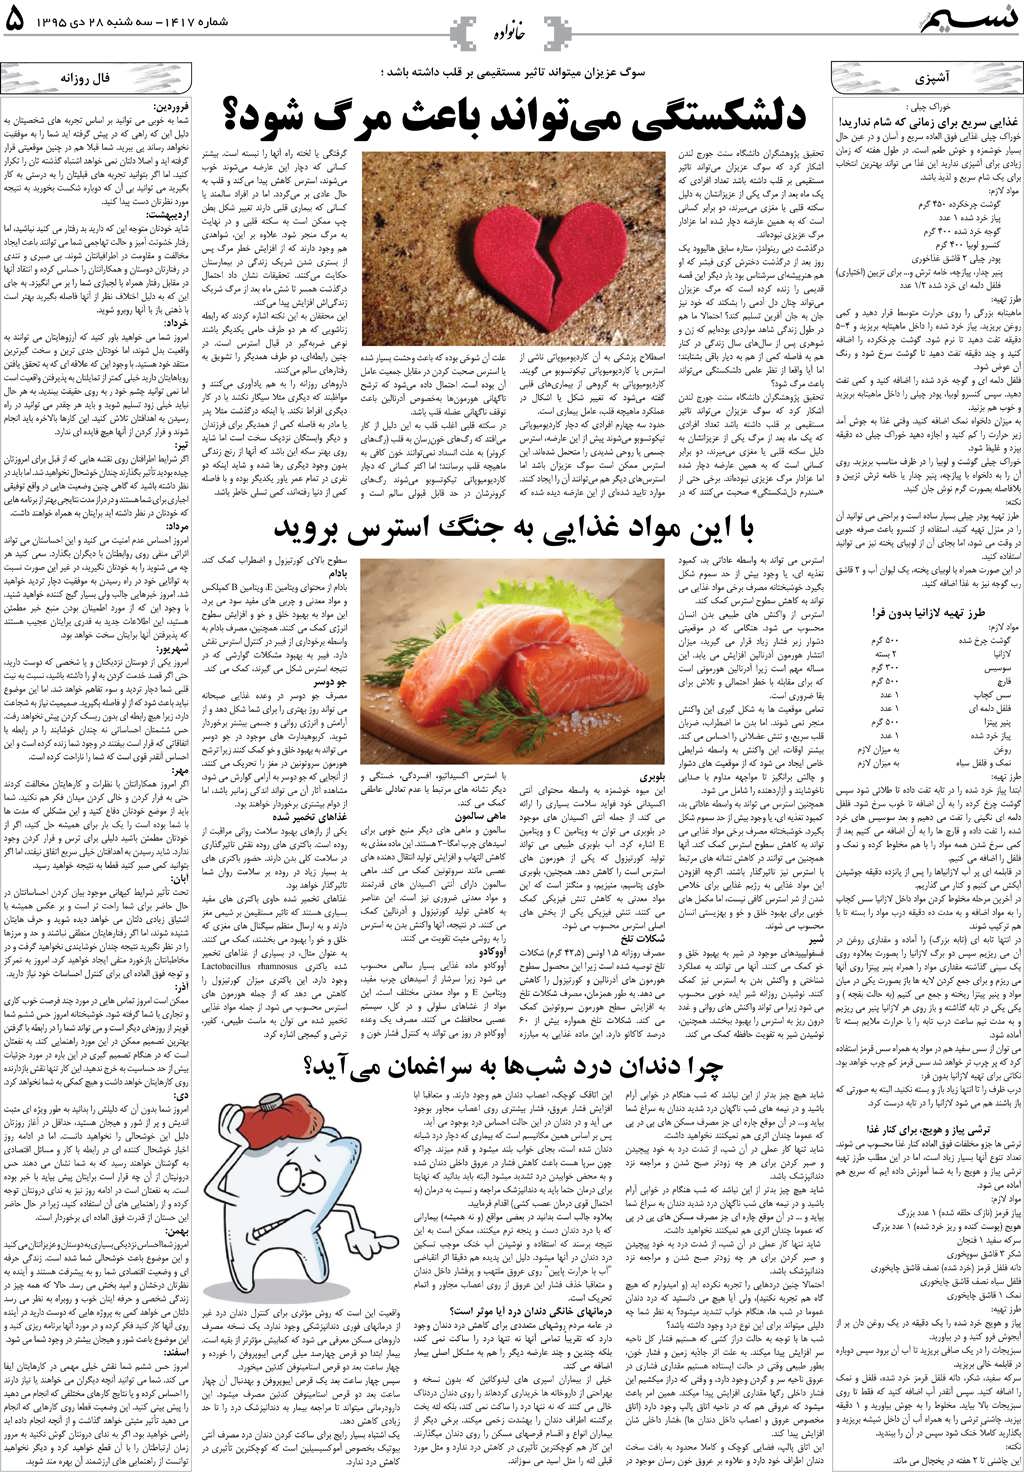 صفحه خانواده روزنامه نسیم شماره 1417